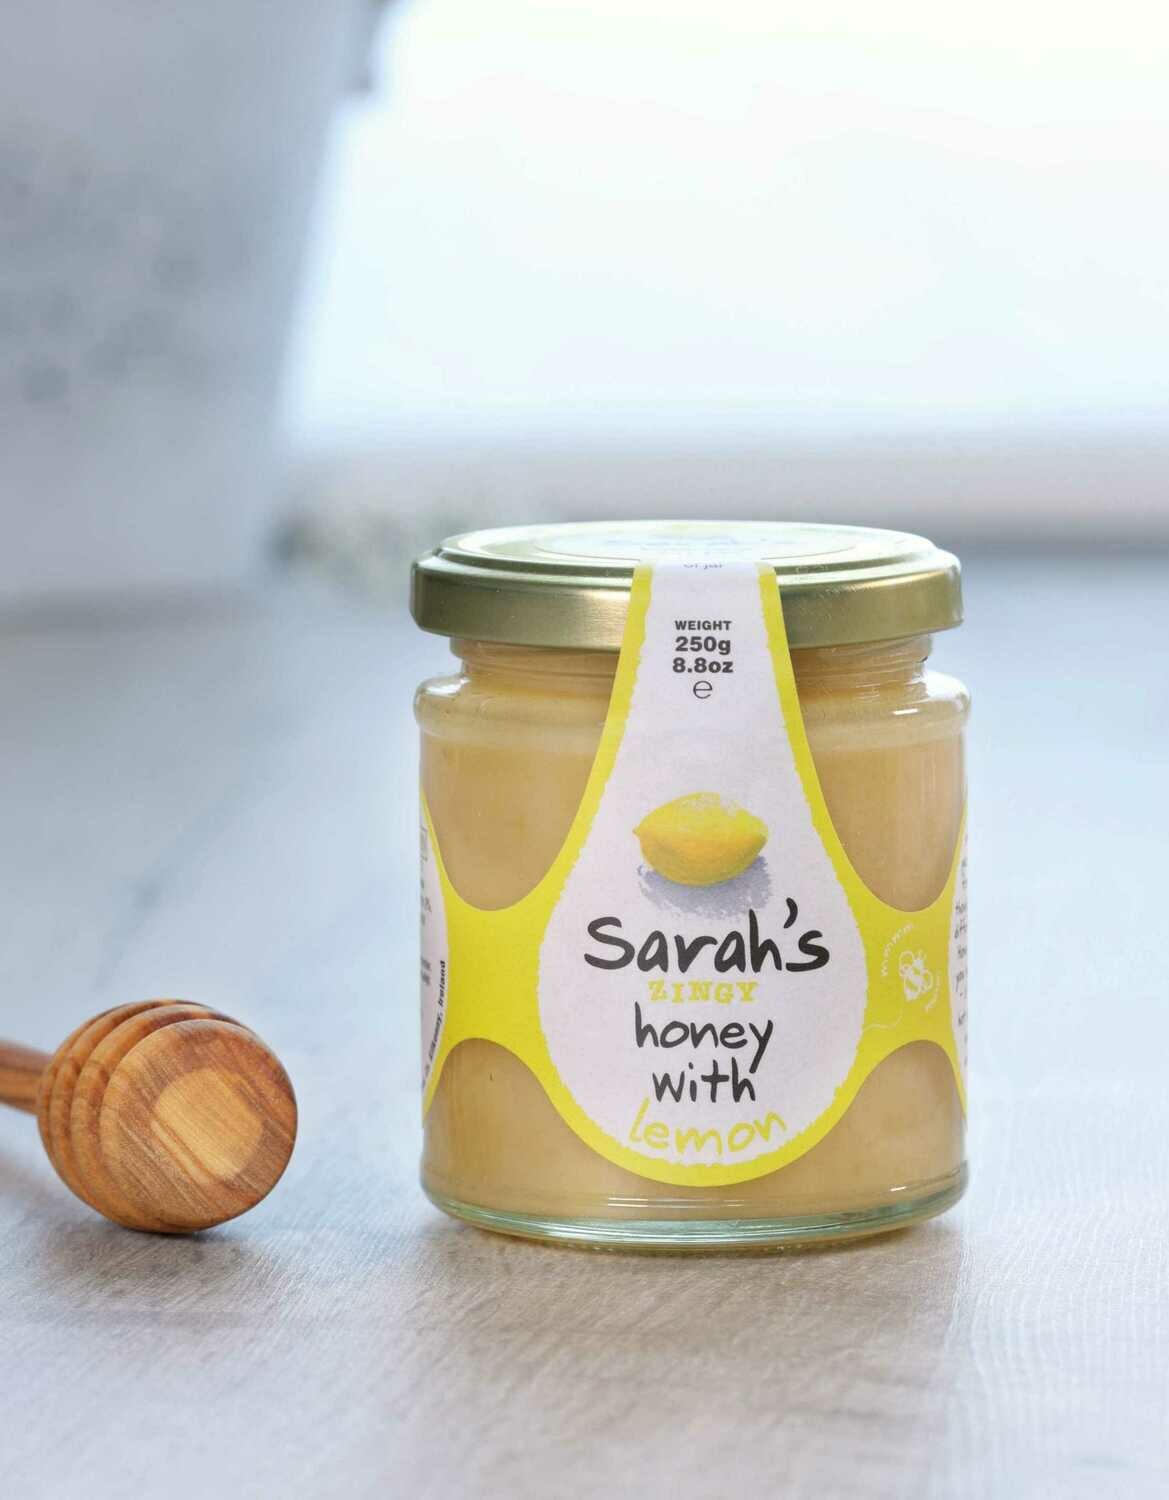 Sarah's Zingy Honey with Lemon